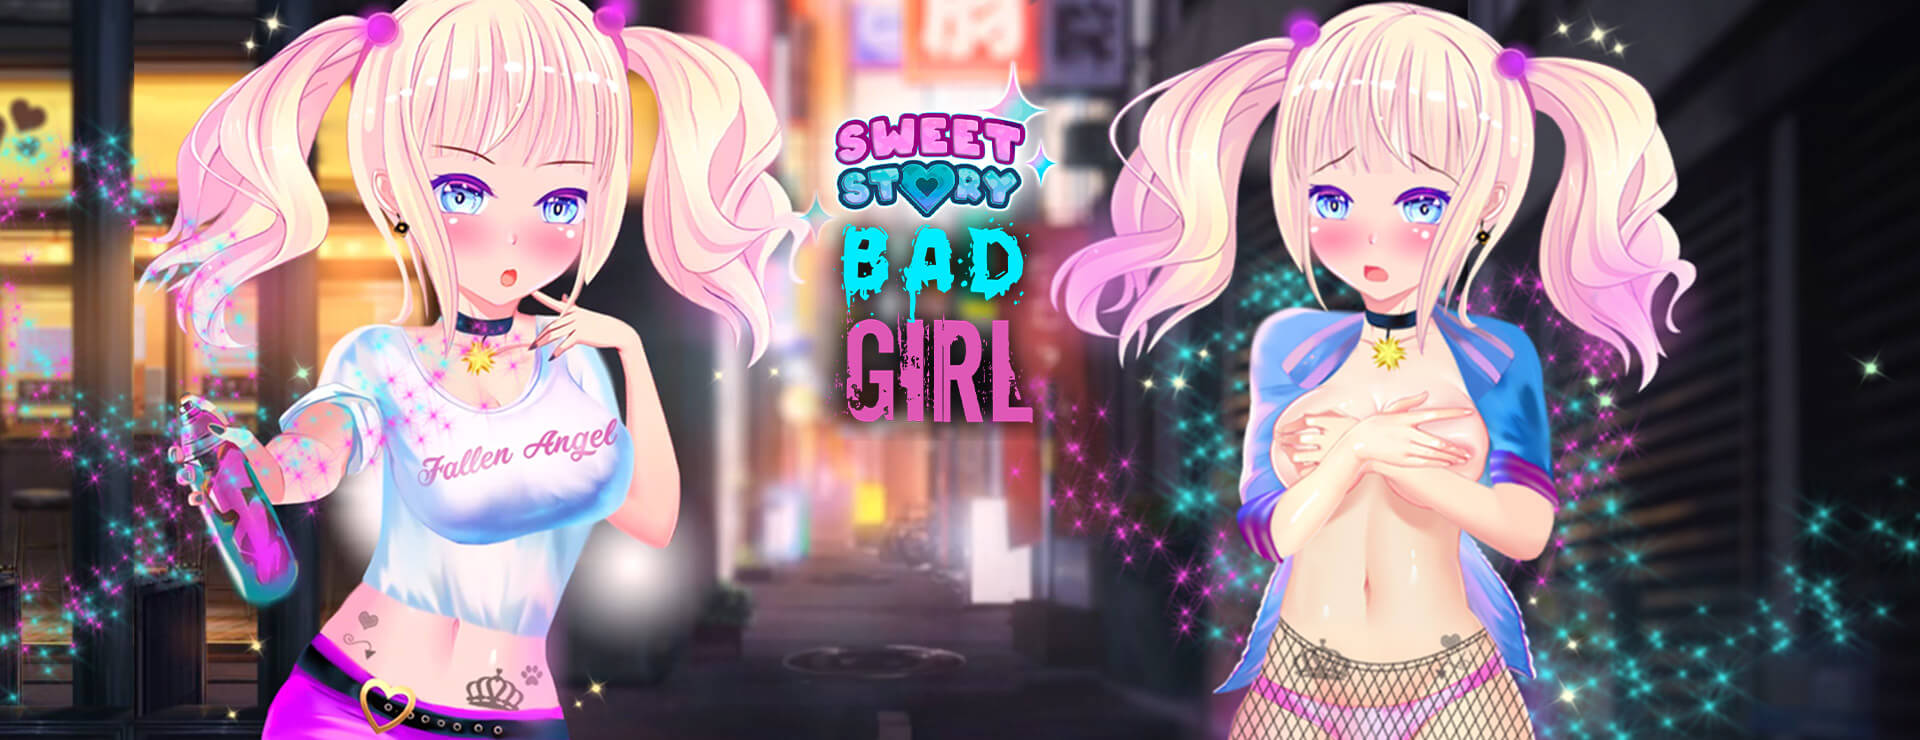 Sweet Story Bad Girl - 休闲游戏 遊戲